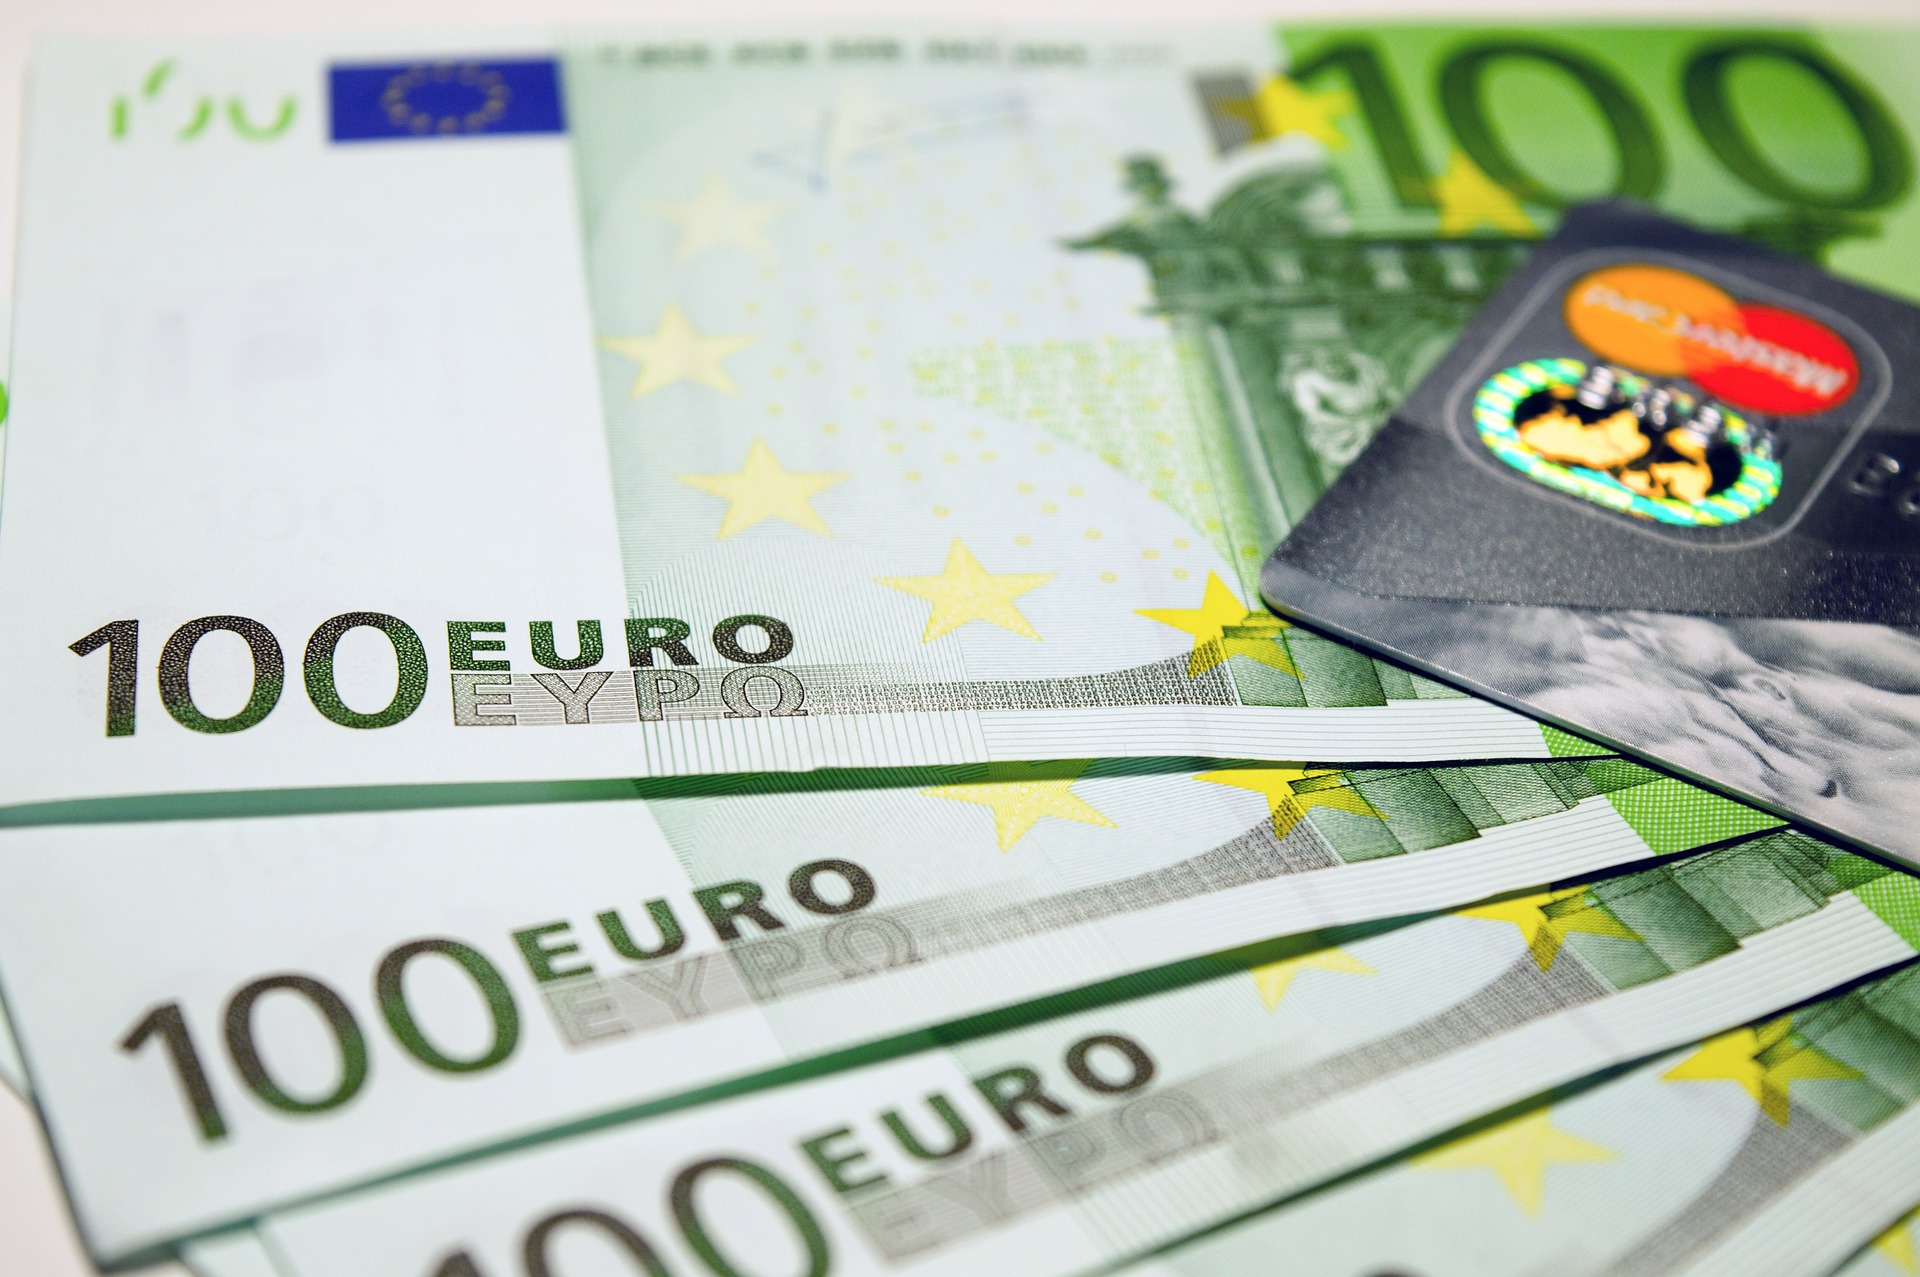 Foto van drie honderd euro biljetten, symbool voor de mogelijkheid om geld te besparen door bezwaar te maken tegen de WOZ-waarde. Dit illustreert de tekst over 100 redenen om bezwaar te maken tegen de WOZ-waarde.